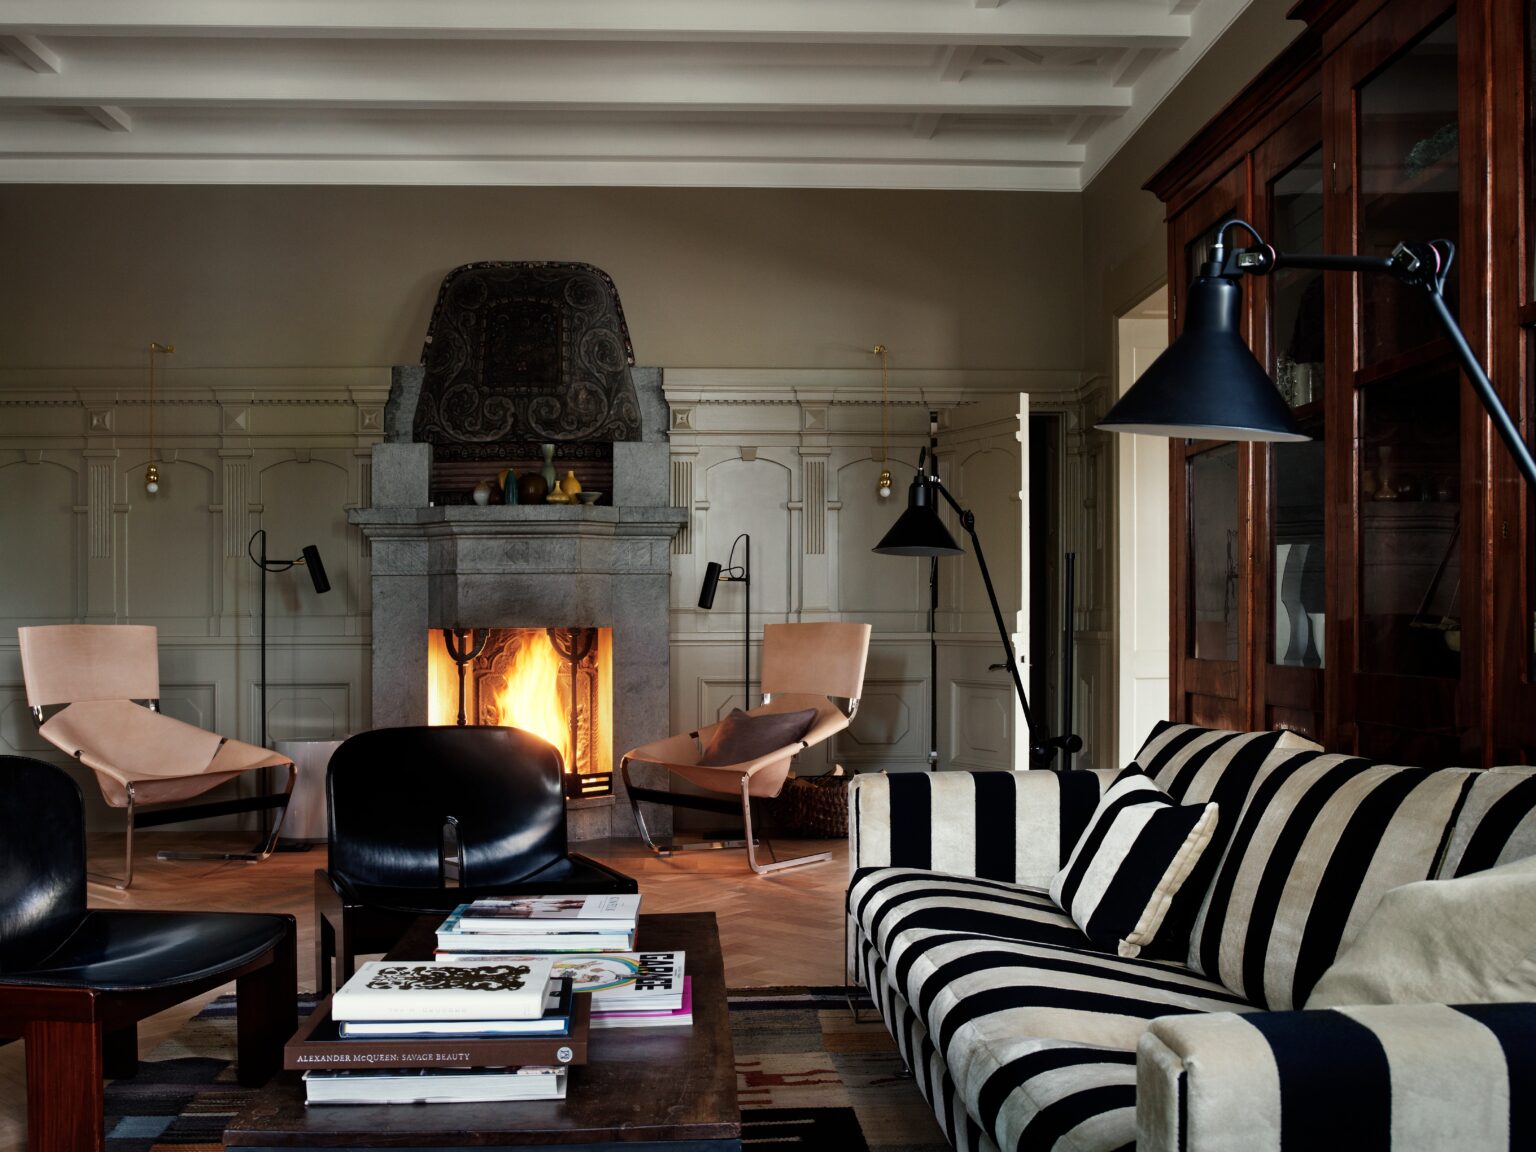 Eclectic Living Room Stockholm Sweden By Studioilse1 2 1536x1152 